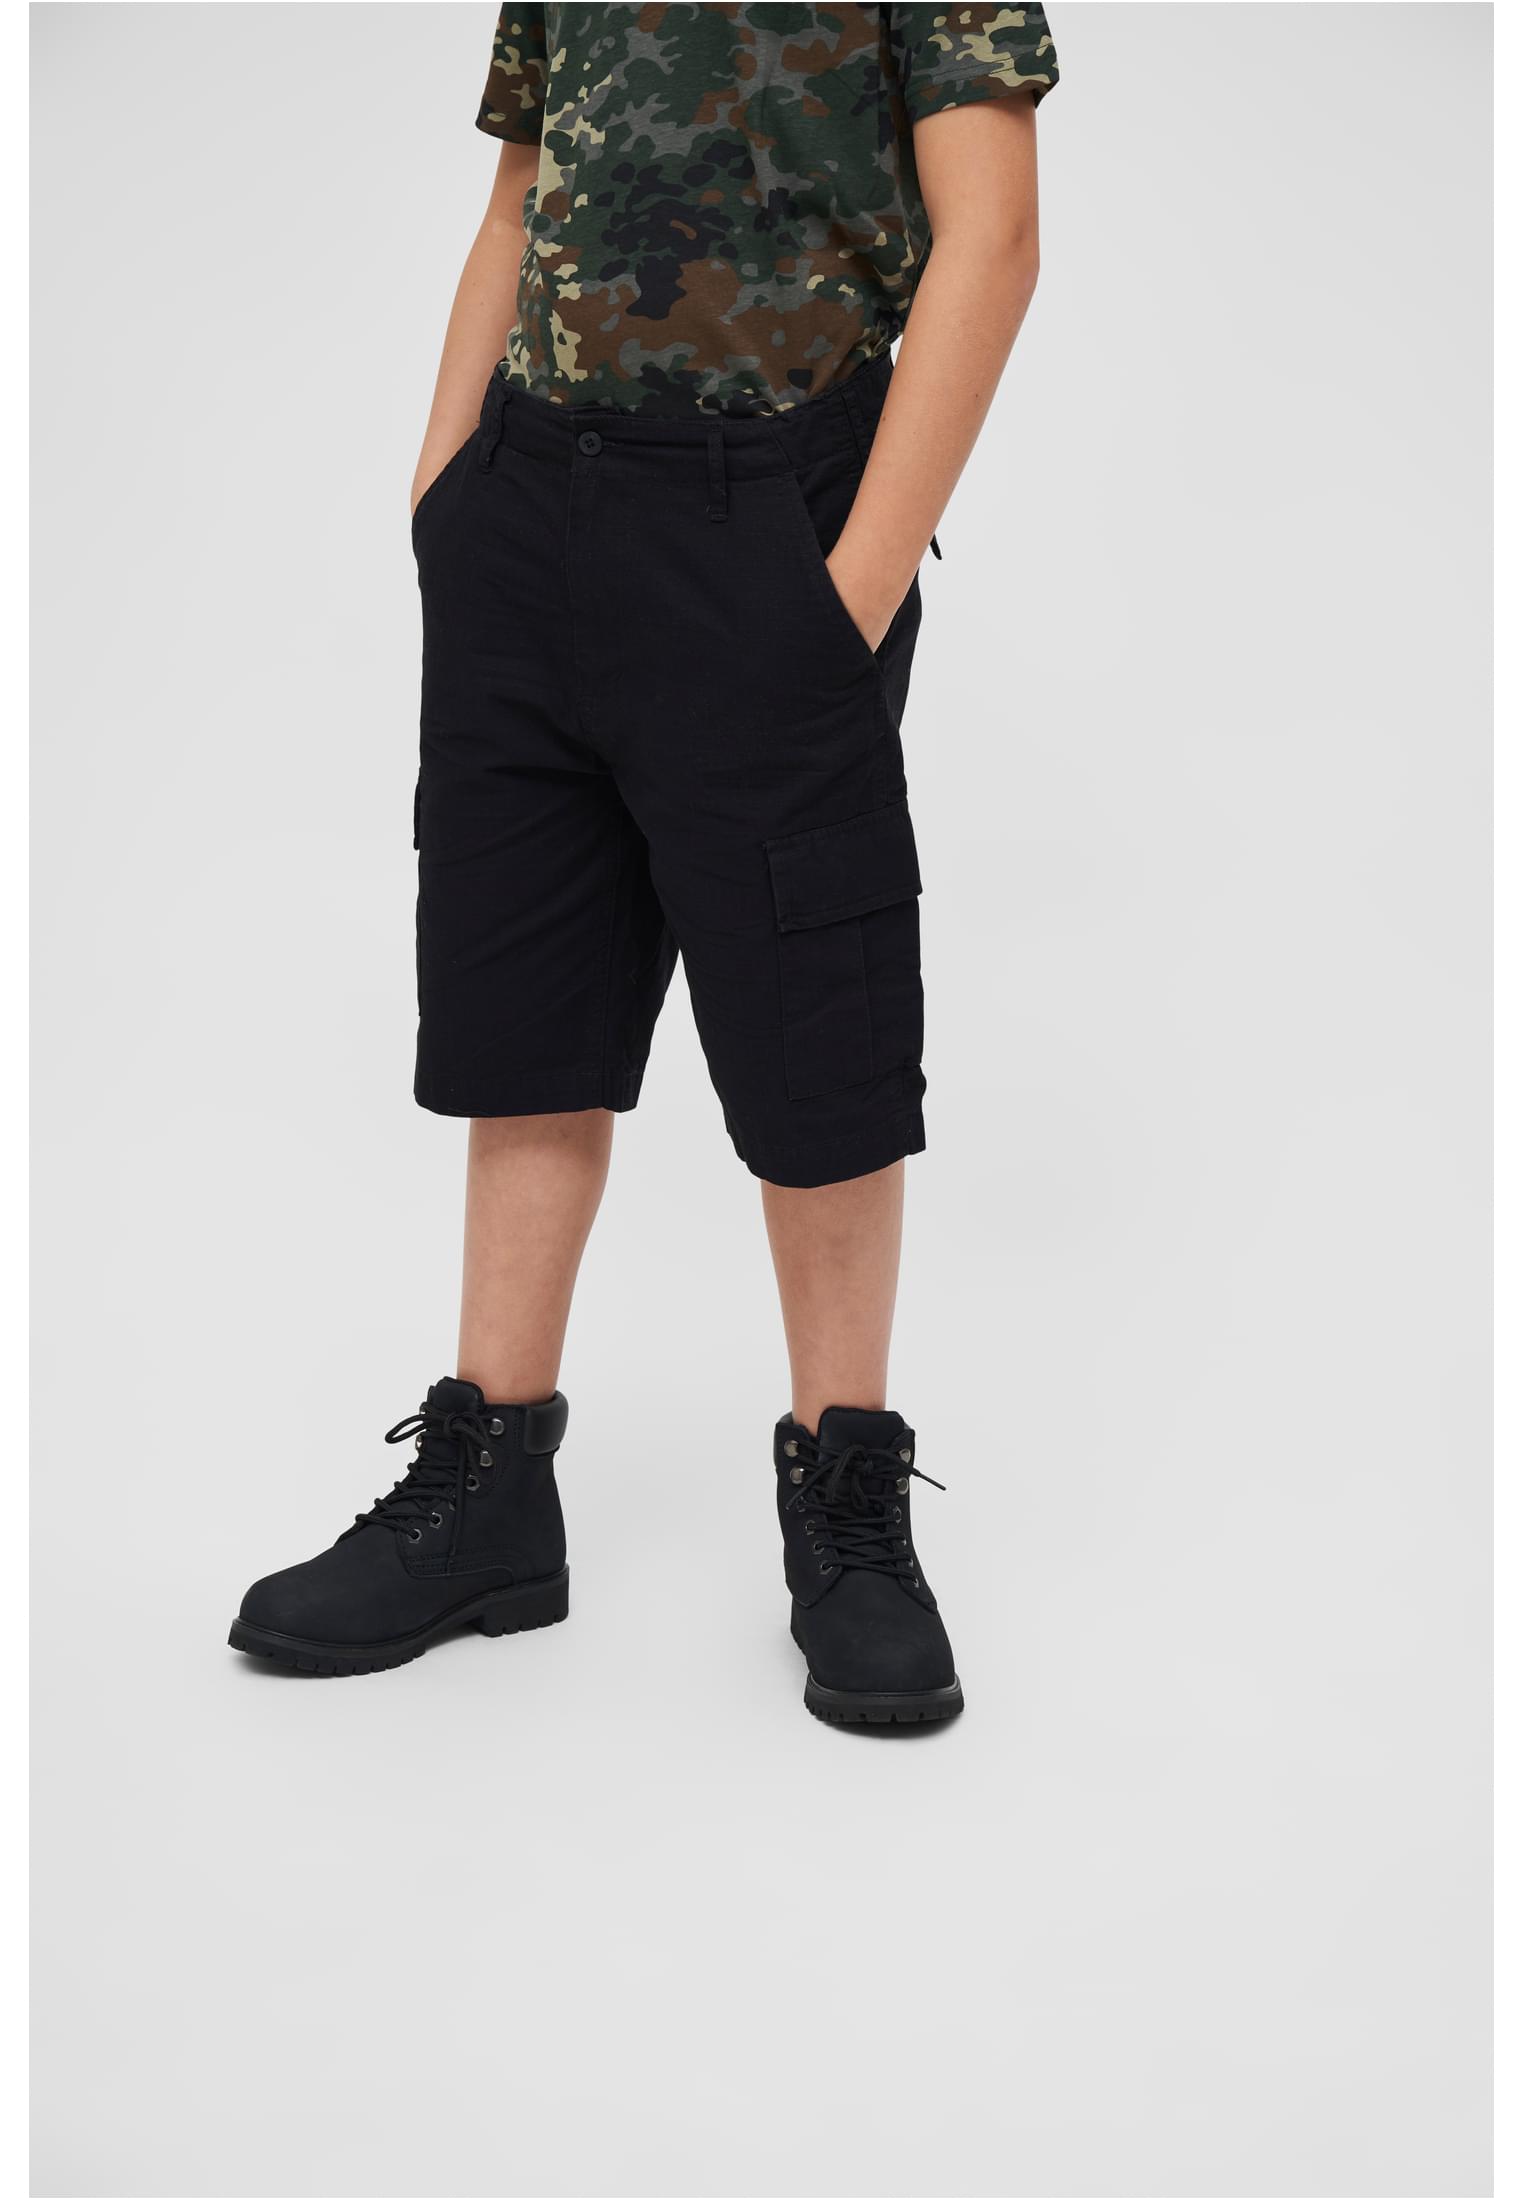 Kinder Kids BDU Ripstop Shorts in Farbe black